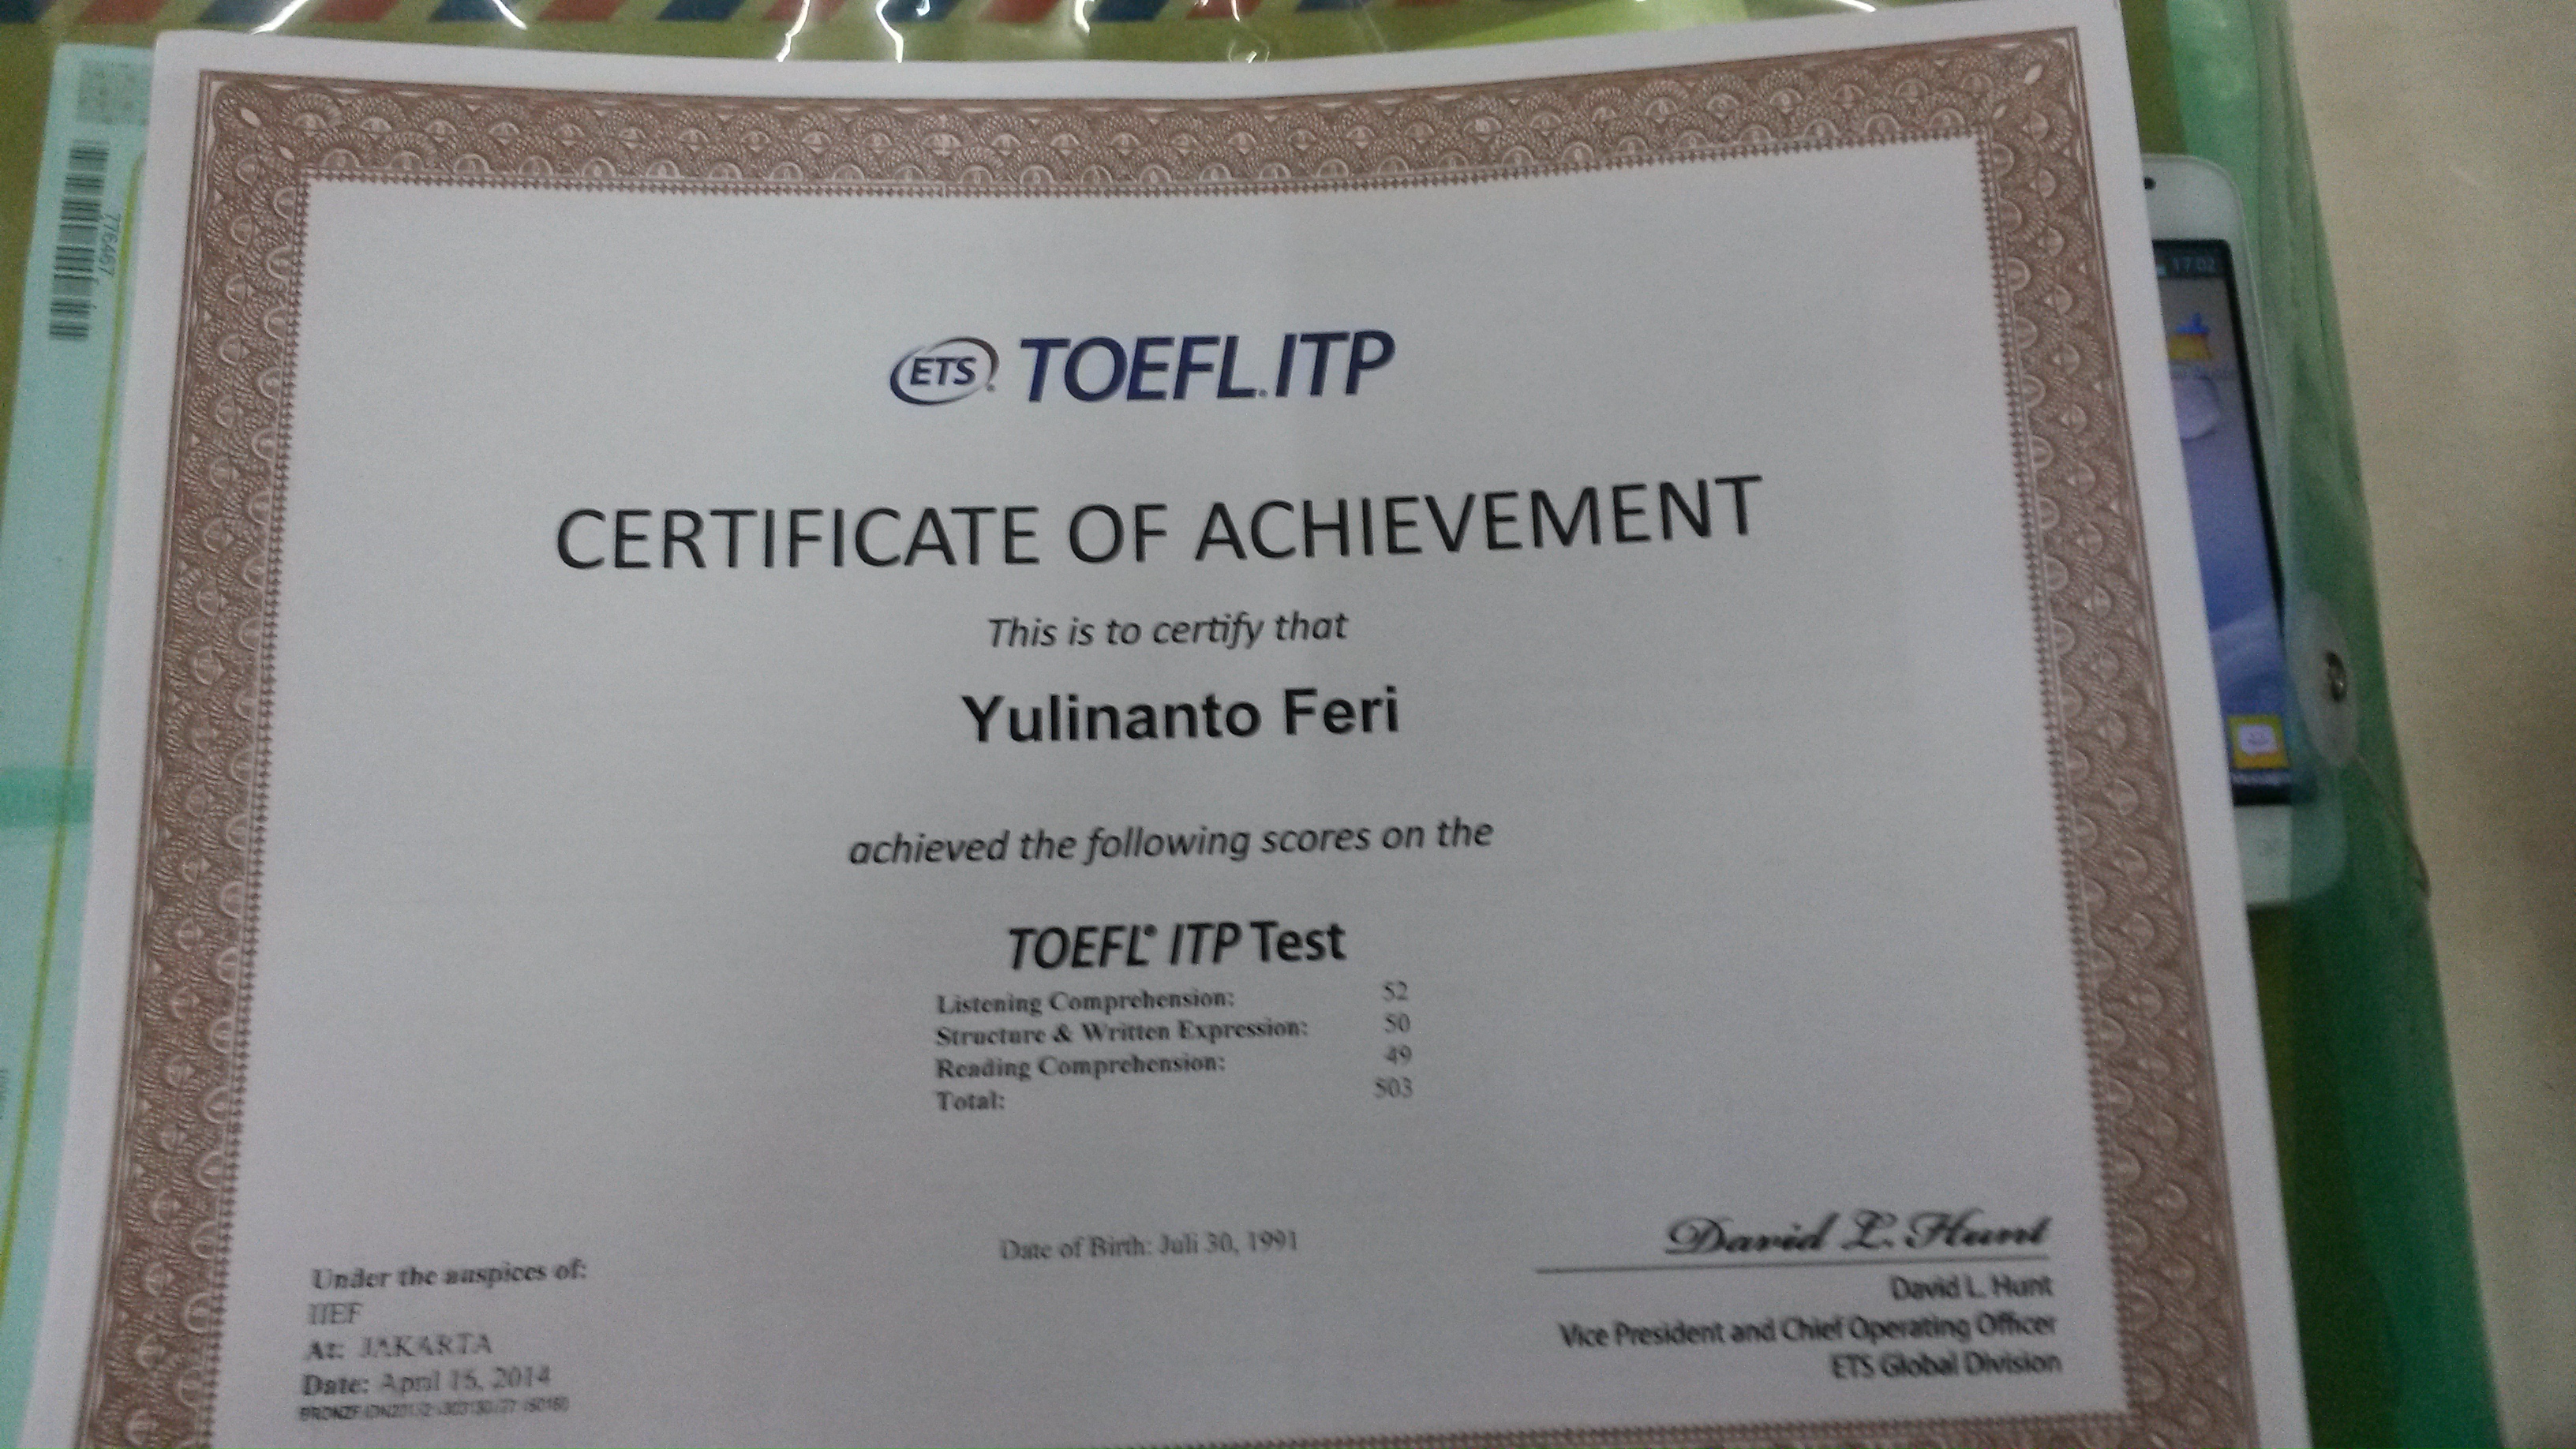 Saya cari cari referensi tempat test TOEFL yang resmi di sekitar Cirebon Wah sayangnya belum nemu juga di beberapa tempat les dan universitas